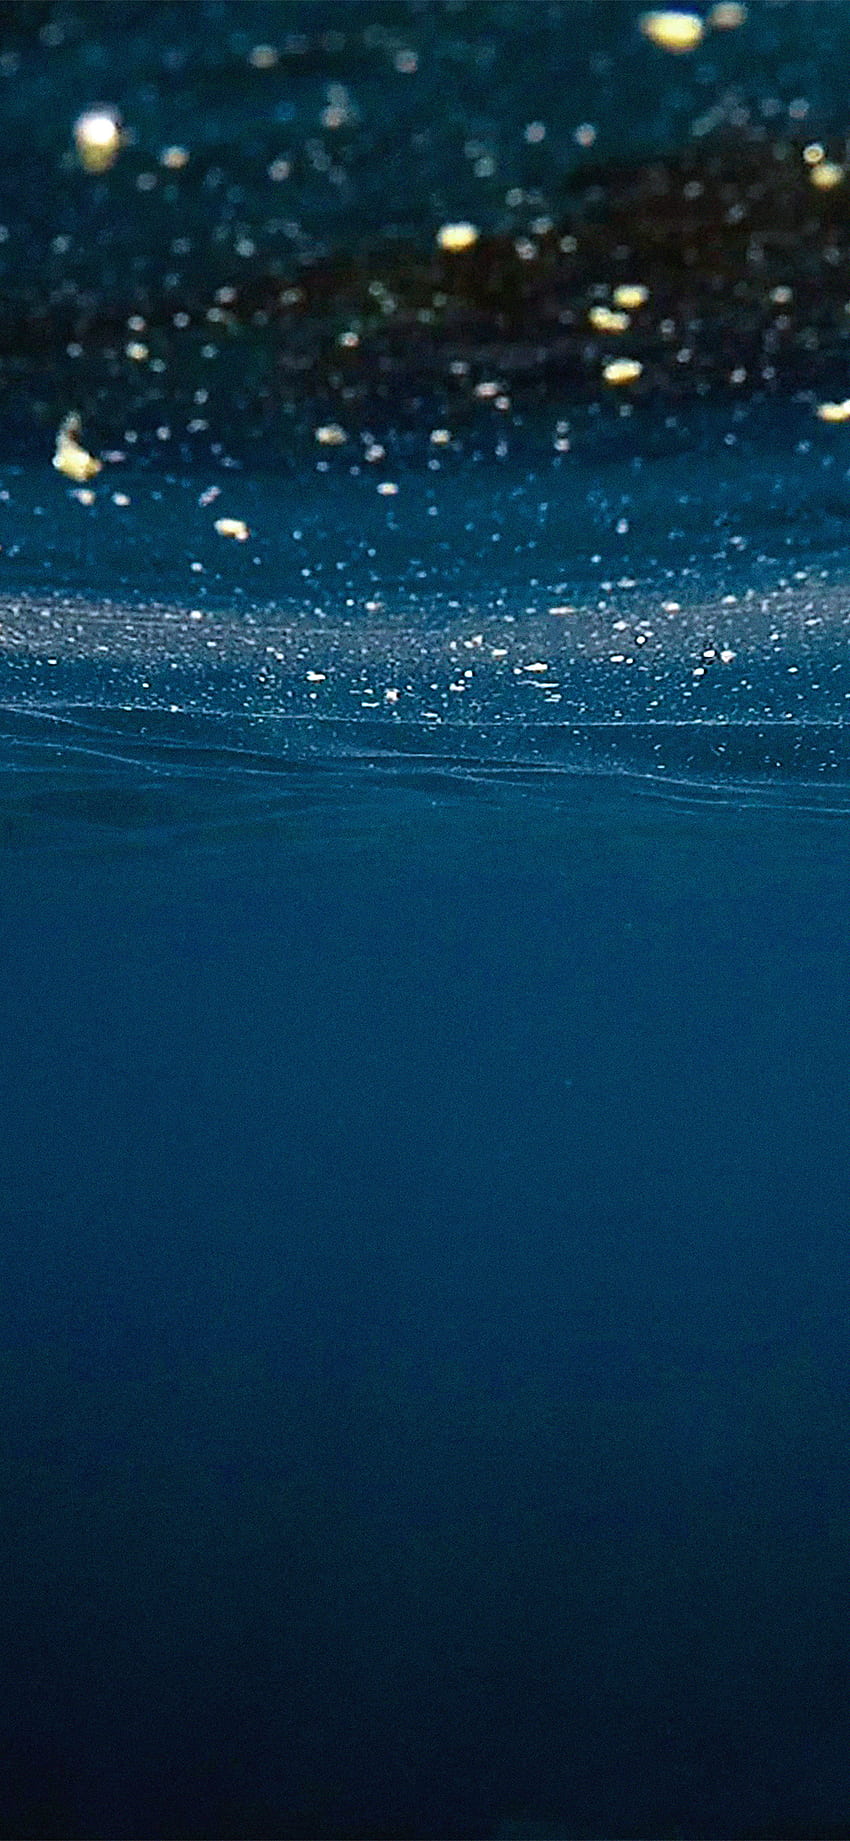 iPhone X . air laut biru gelap di bawah pola, Dark Ocean Water wallpaper ponsel HD